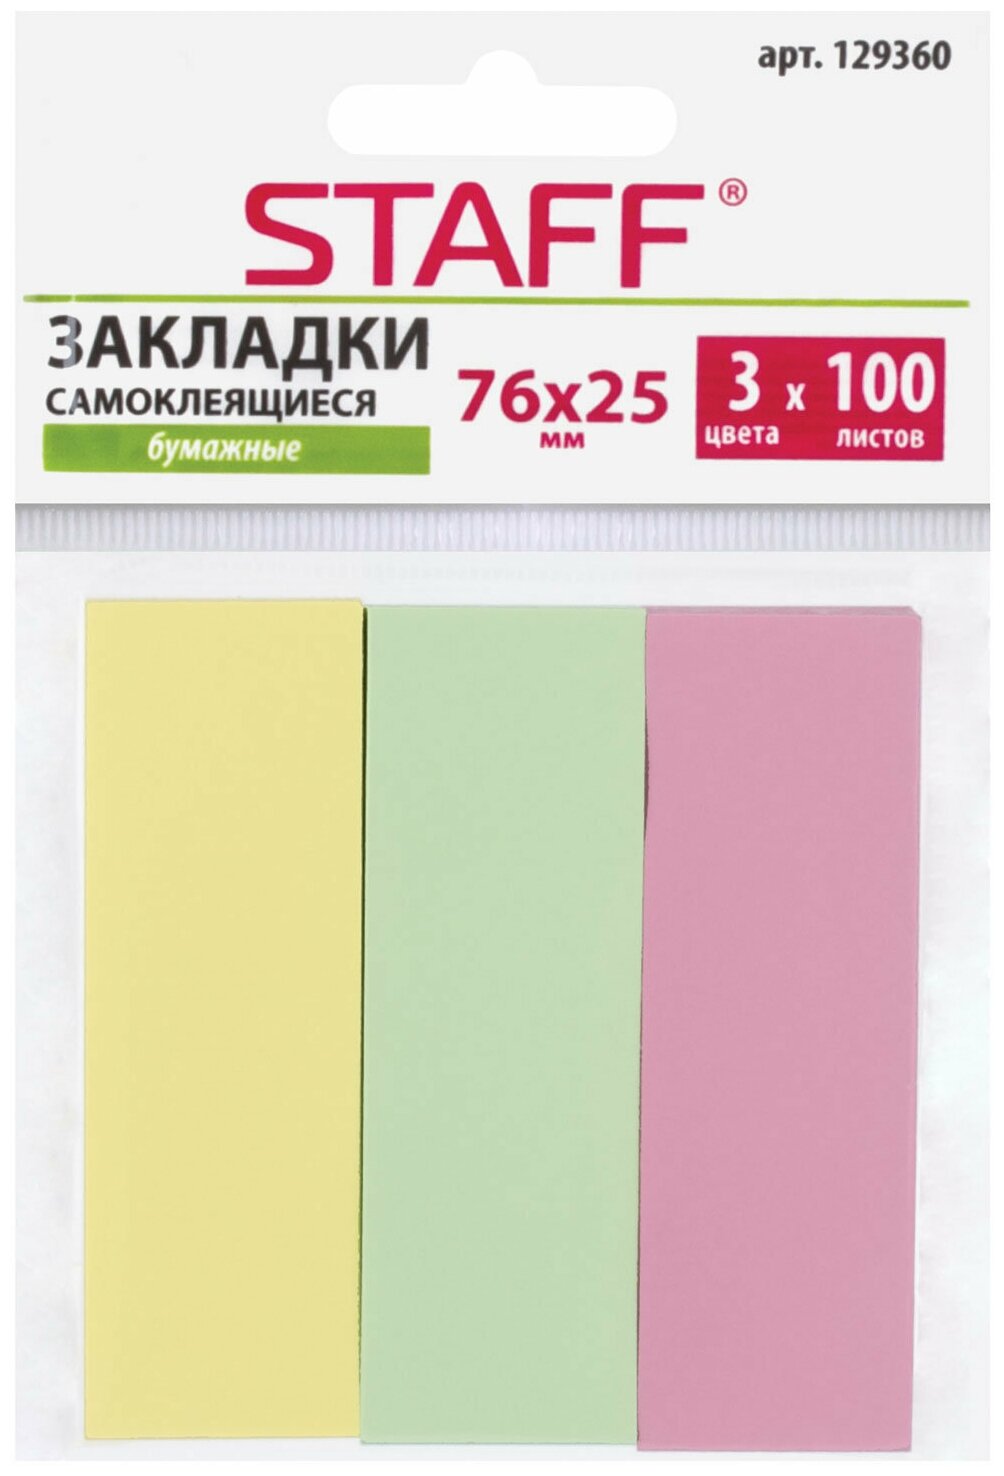 Закладки клейкие бумажные STAFF, 76х25 мм, 3 цвета х 100 листов, код_1С - фото №5